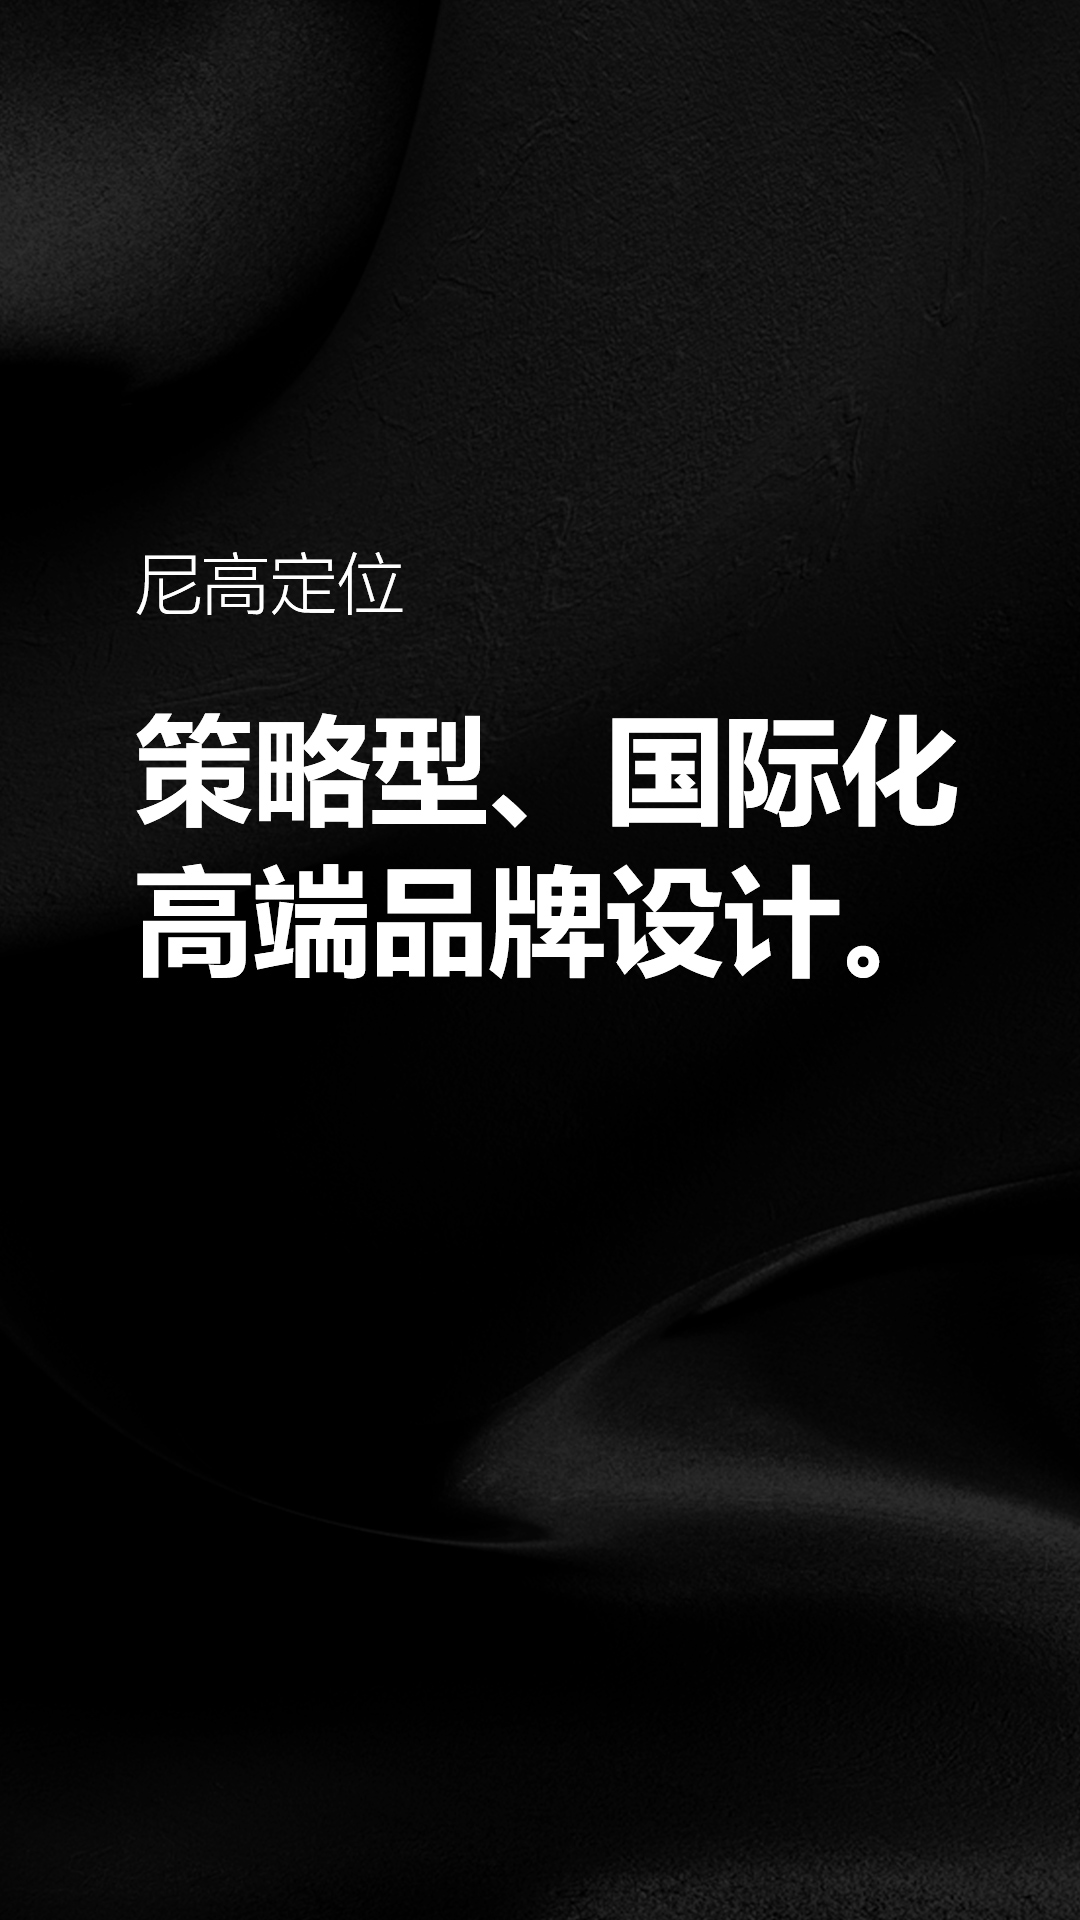 尼高品牌设计公司-VI设计公司-深圳logo设计-企业形象设计公司 image